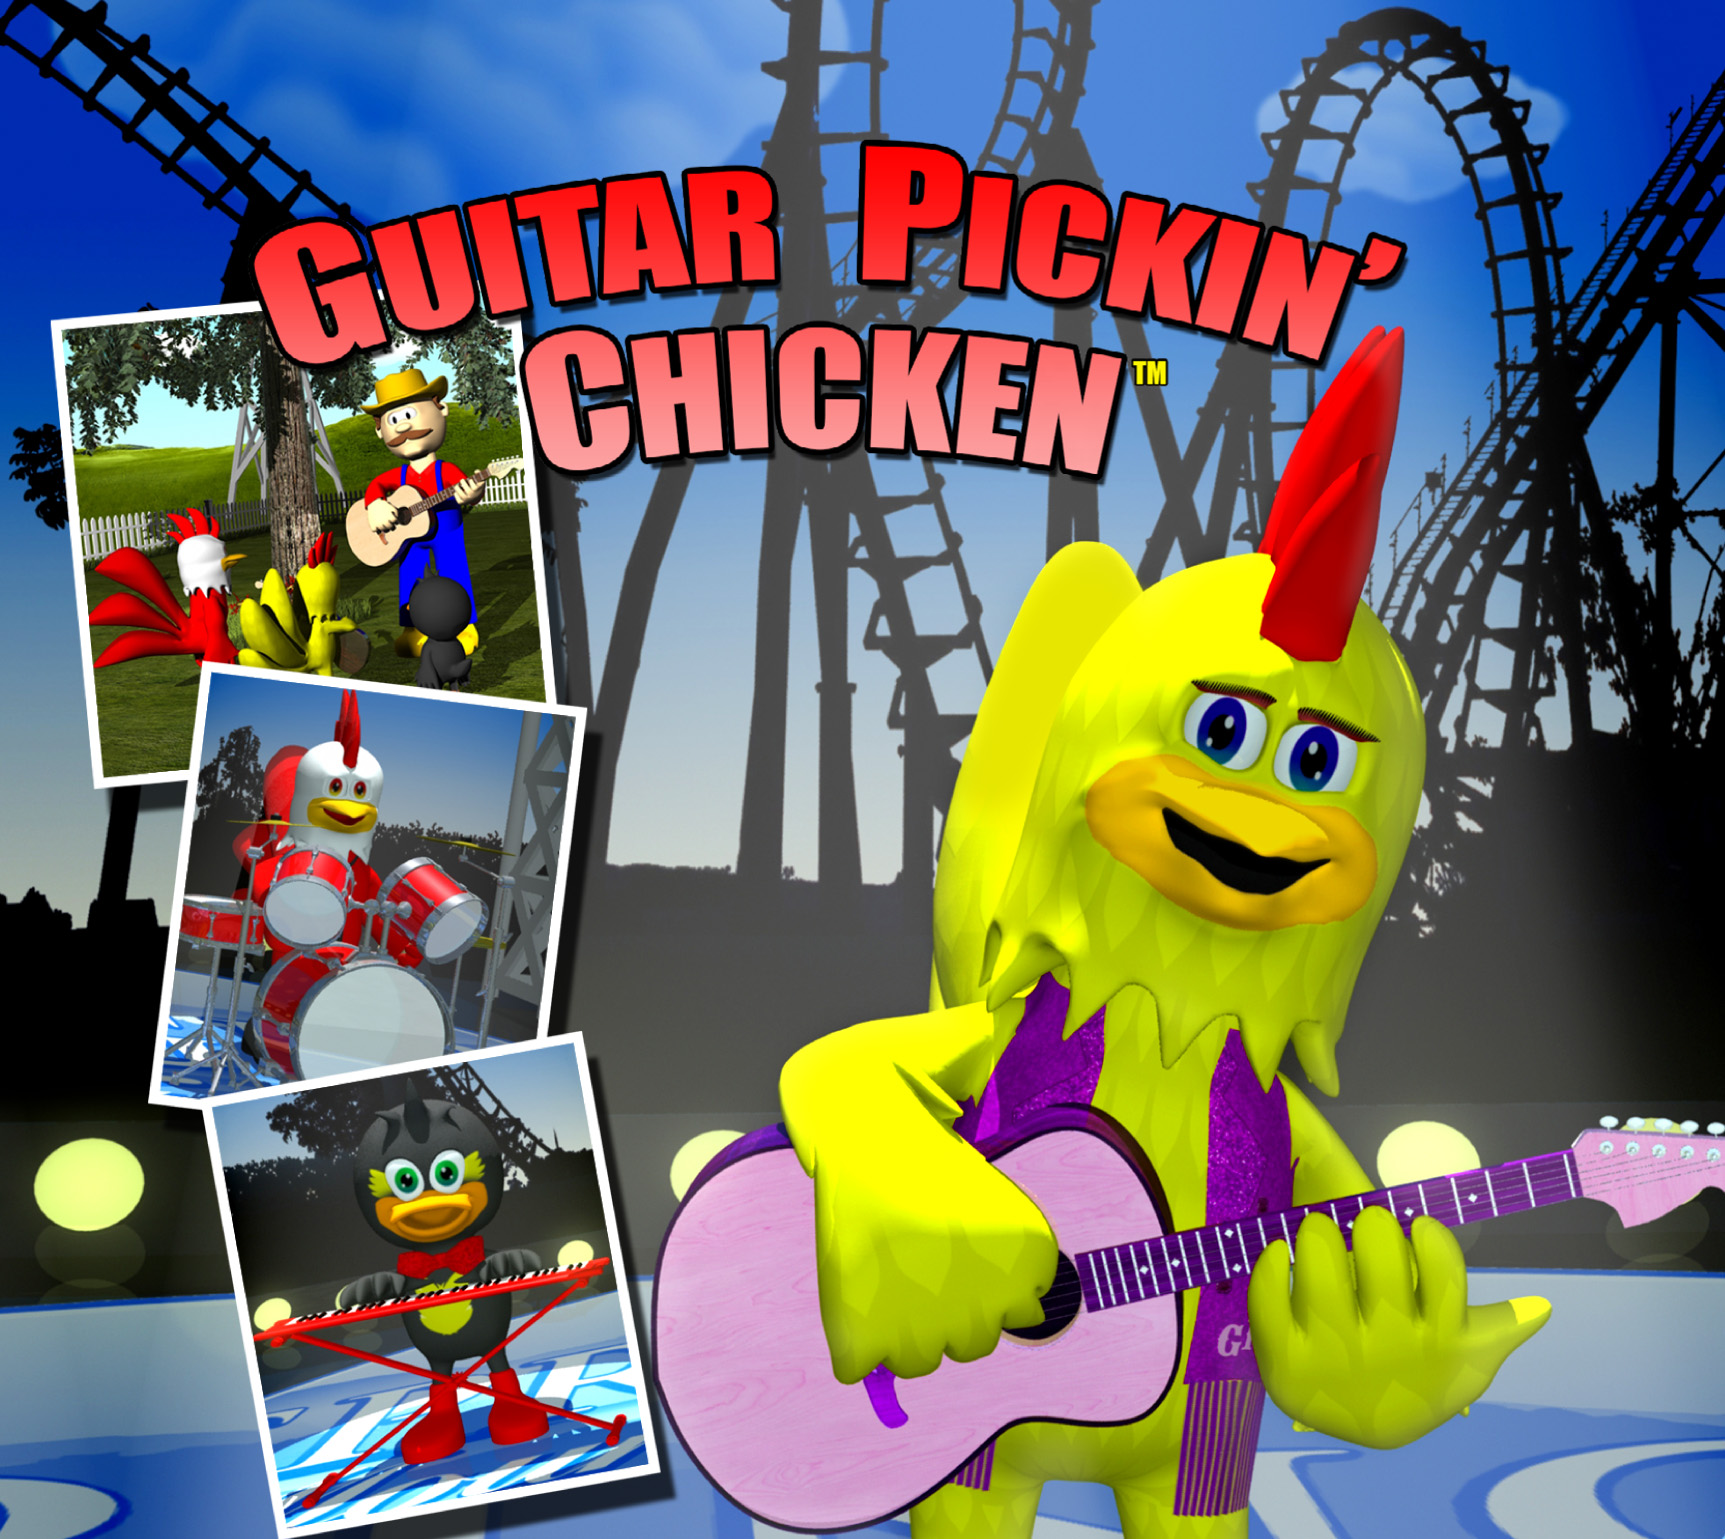 Guitar Pickin' Chicken DVDs, CD